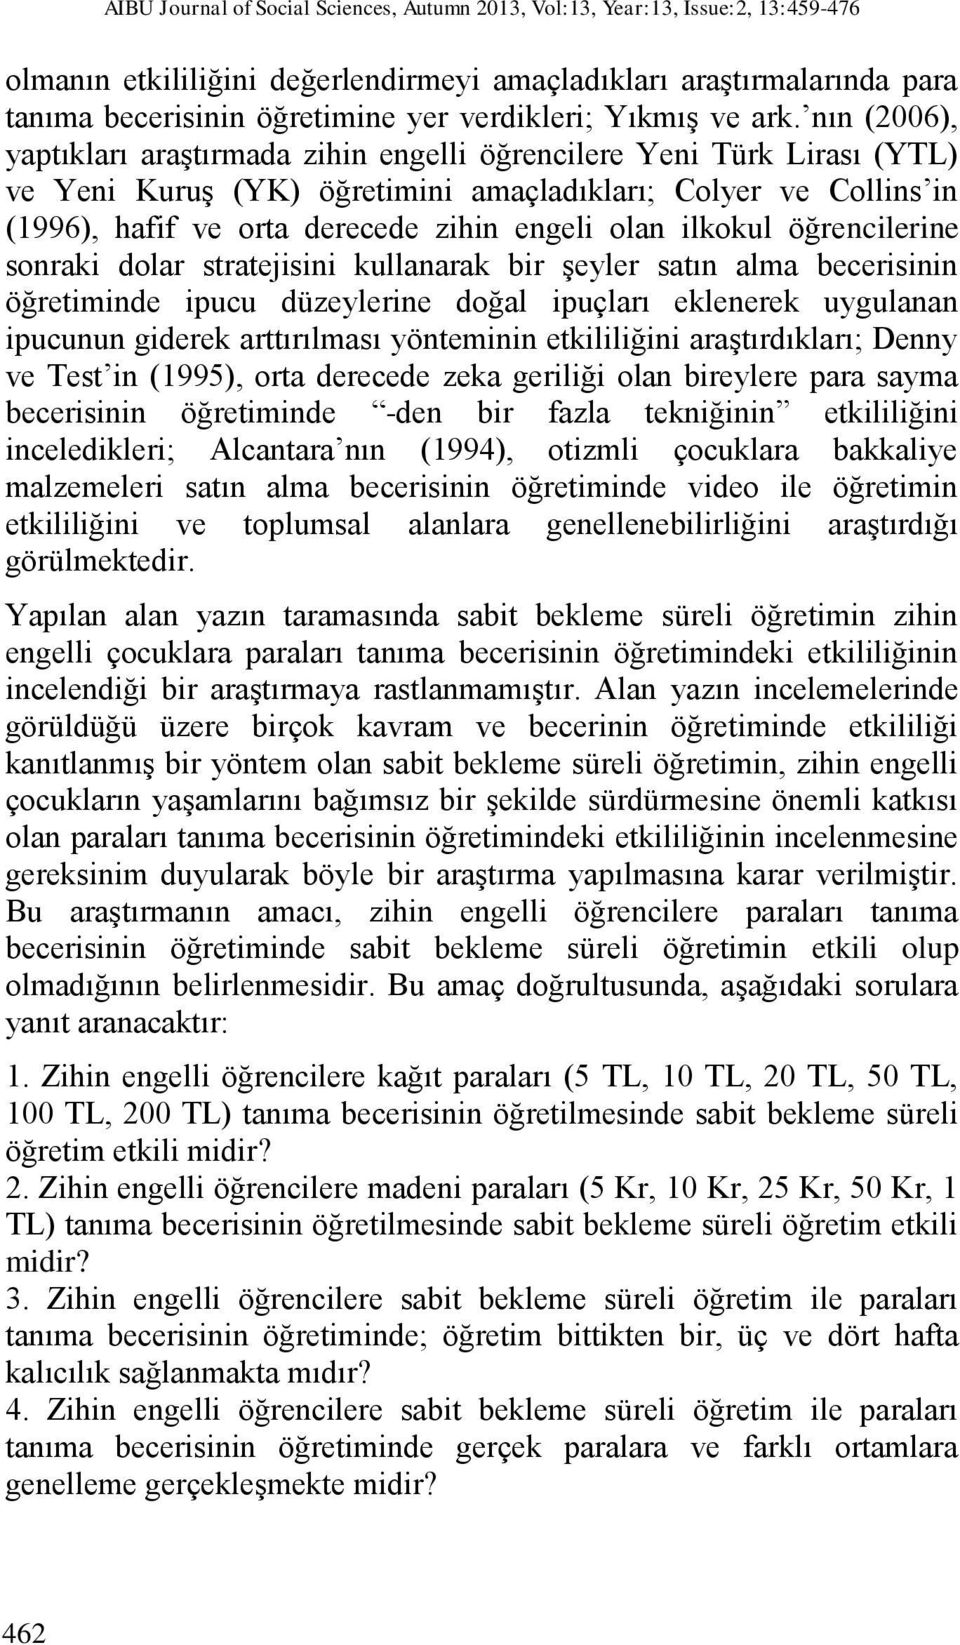 nın (2006), yaptıkları araştırmada zihin engelli öğrencilere Yeni Türk Lirası (YTL) ve Yeni Kuruş (YK) öğretimini amaçladıkları; Colyer ve Collins in (1996), hafif ve orta derecede zihin engeli olan